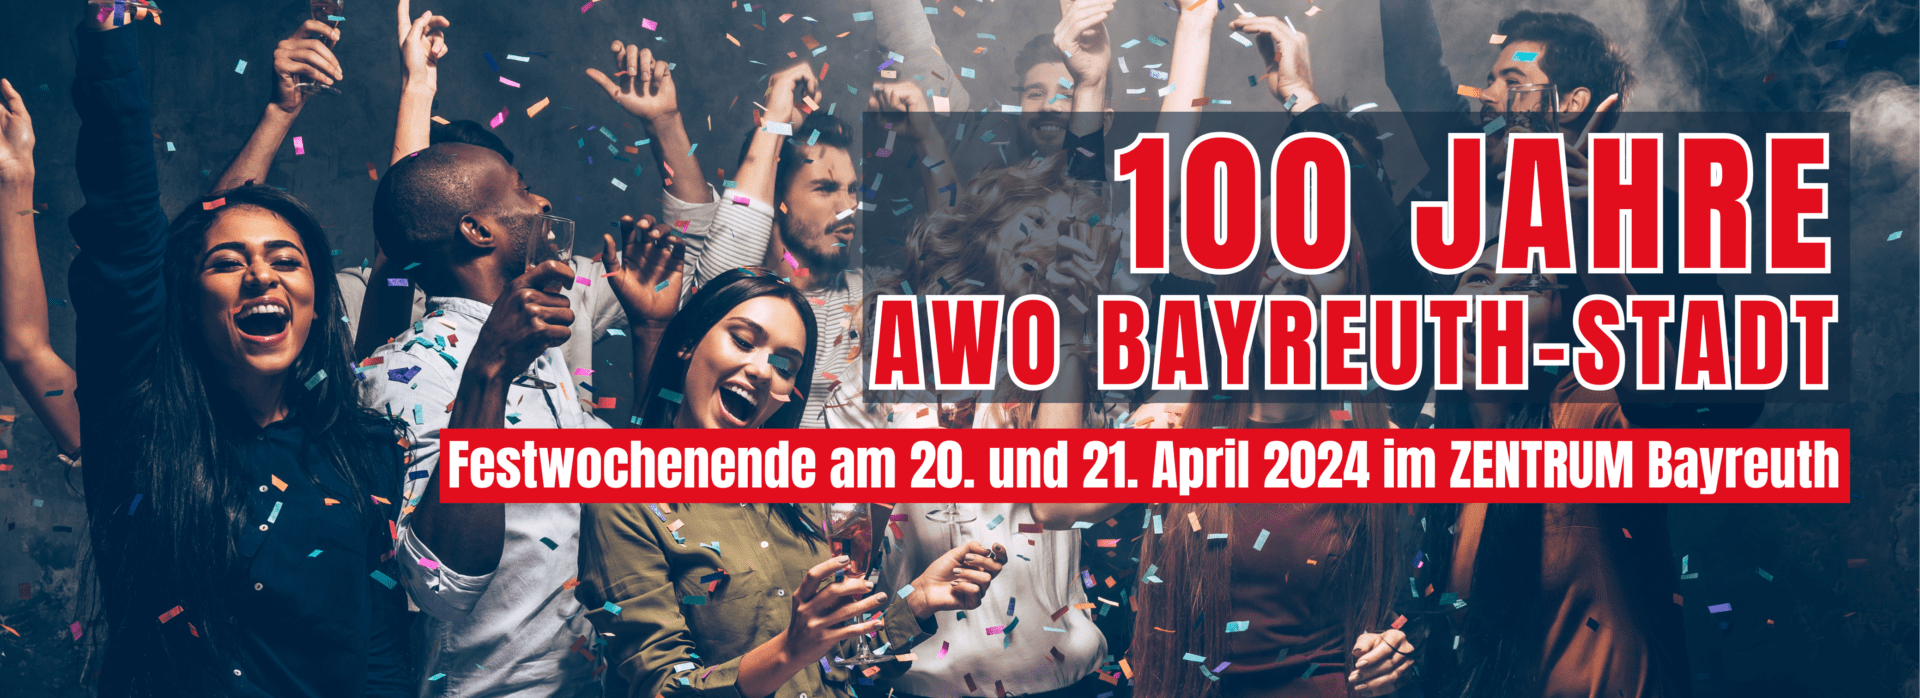 100 Jahre AWO Bayreuth: Großes Festwochenende vom 19. bis 21. April 2024